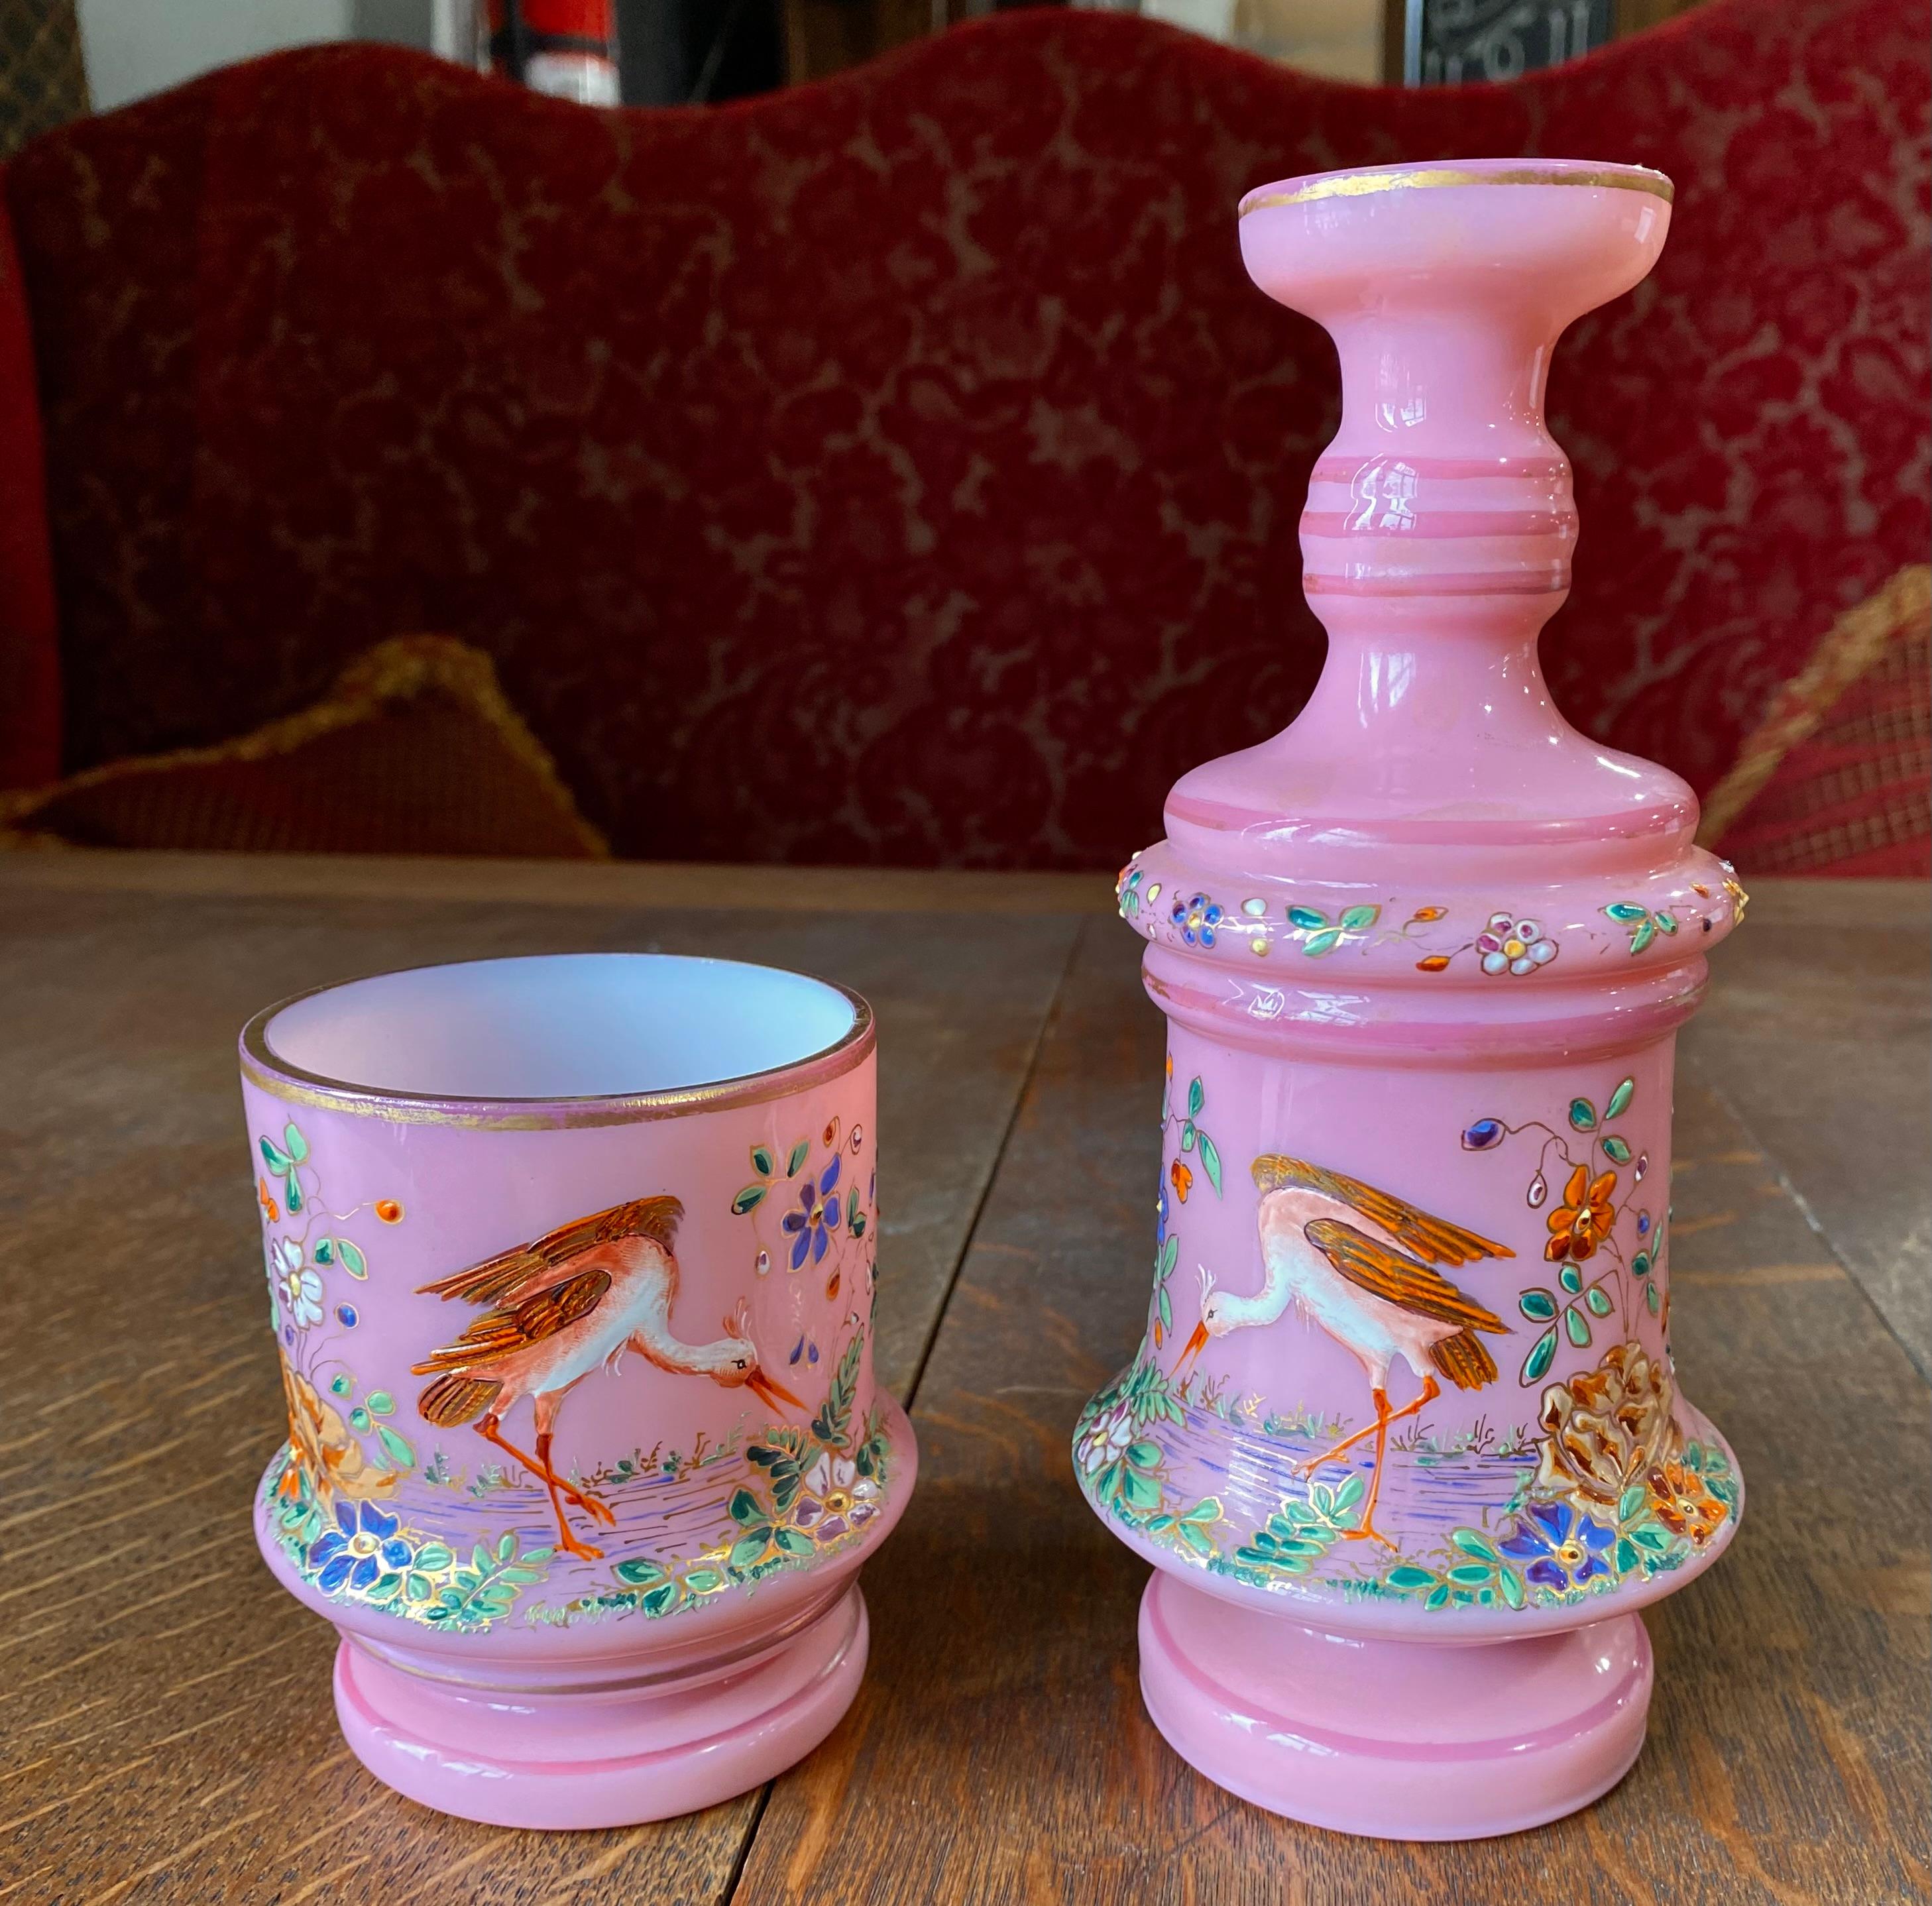 Exceptionnelle et rare carafe de chevet de Moser Bohemia et verre à boire associé en verre opalin émaillé d'une exquise couleur rose, le corps circulaire magnifiquement peint à la main tout autour des deux pièces et avec des dorures.

Moser est un